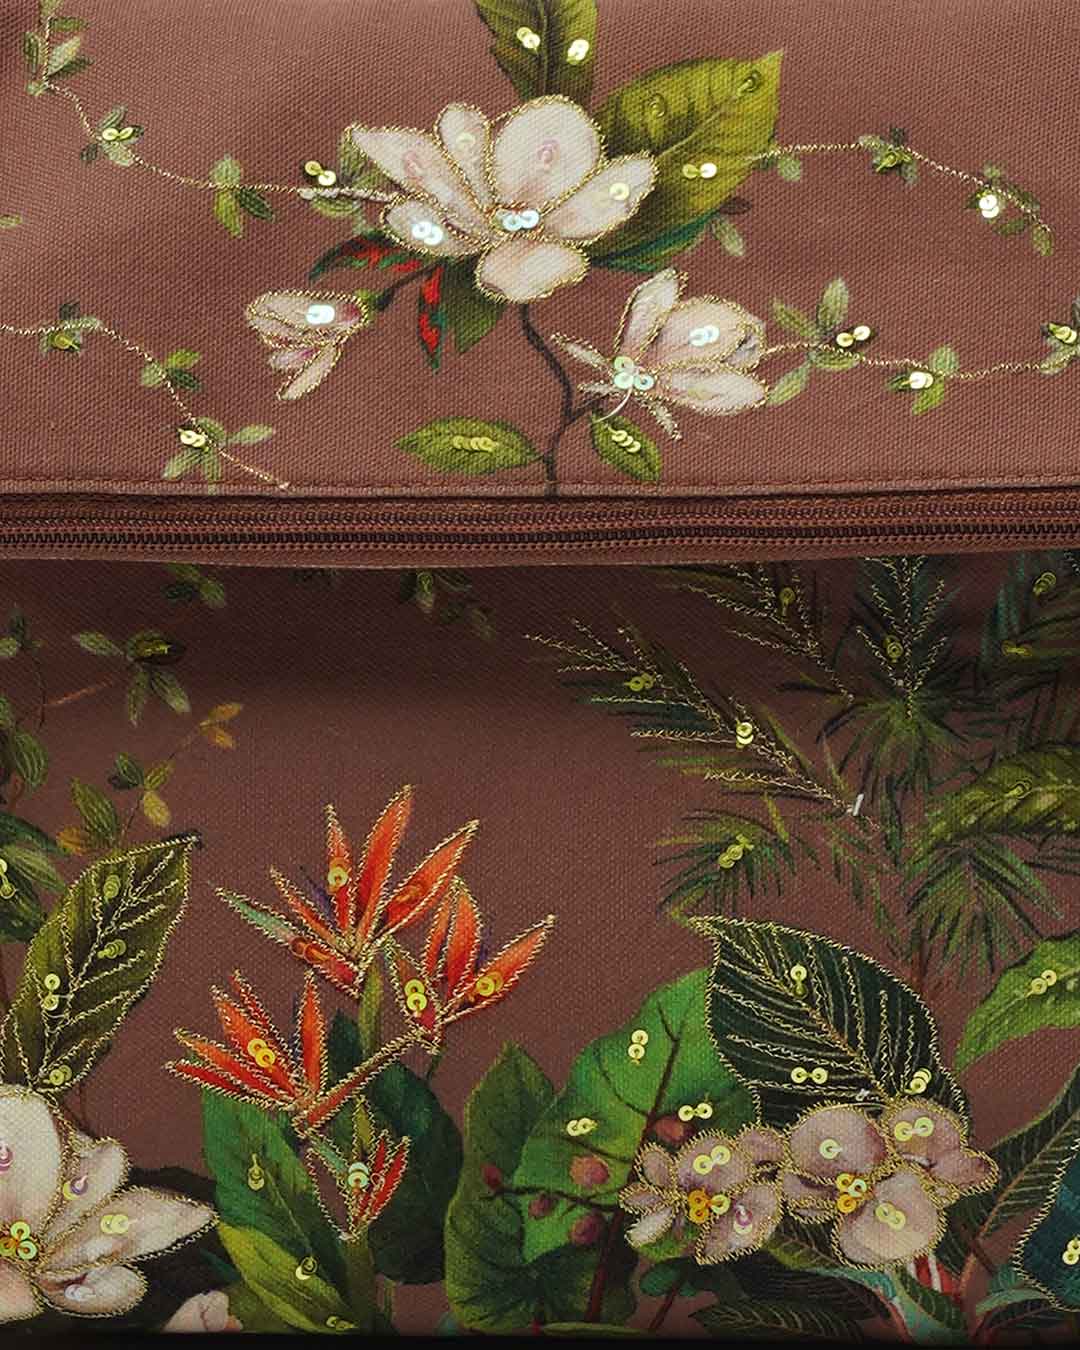 Floral Paradise Foldover Sling Bag